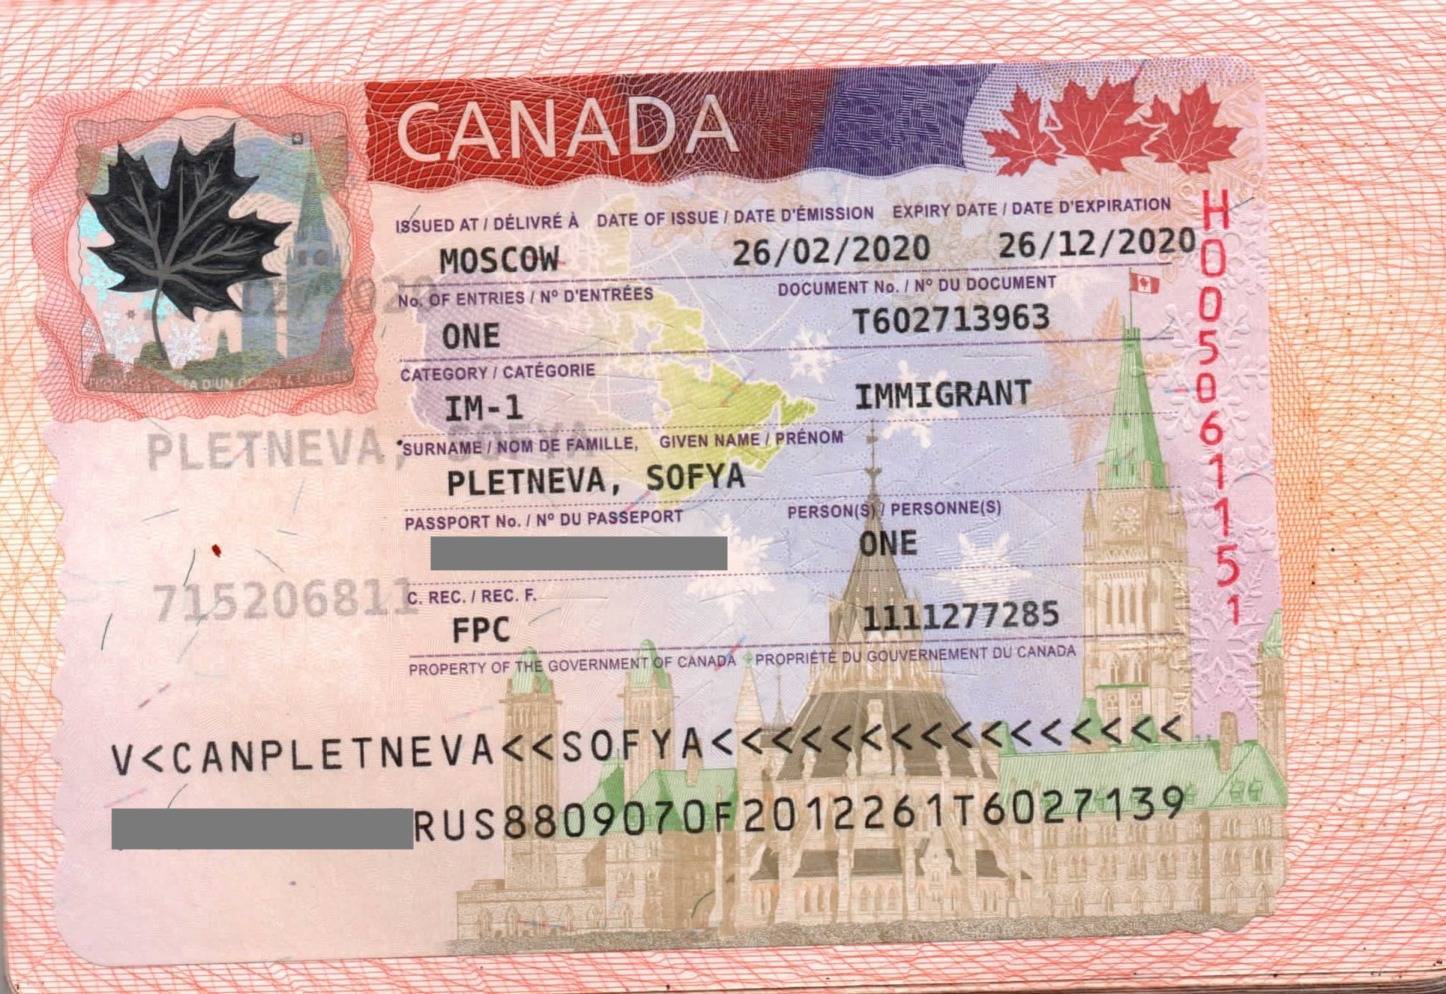 Рабочая виза в канаду - документы и сроки действия разрешения